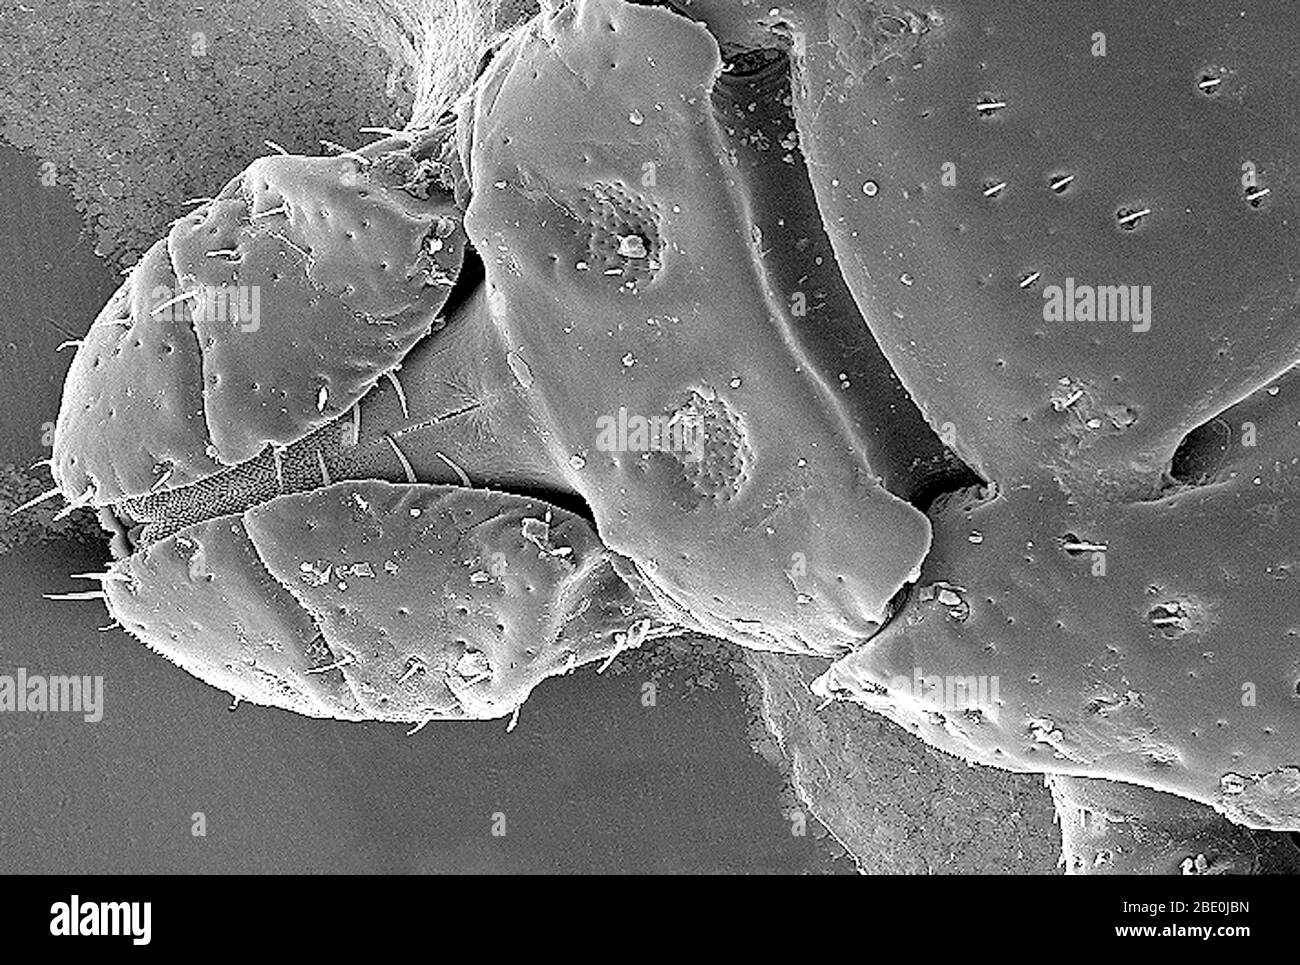 Scansione della micrografia elettronica (SEM) che mostra la vista dorsale di una variabilis di Dermacentor. Variabilis, conosciuto anche come il tick americano del cane o il tick del legno, è una specie di tick che è conosciuto per trasportare i batteri responsabili di parecchie malattie nell'uomo, compreso la febbre macchiata e tularemia della montagna Rocky (Francisella tularensis). È uno dei segni di spunta più noti. Le malattie si diffondono quando succhia sangue dall'ospite, che potrebbe richiedere diversi giorni affinché l'ospite sperimenti alcuni sintomi. Ingrandimento: 98x. Foto Stock